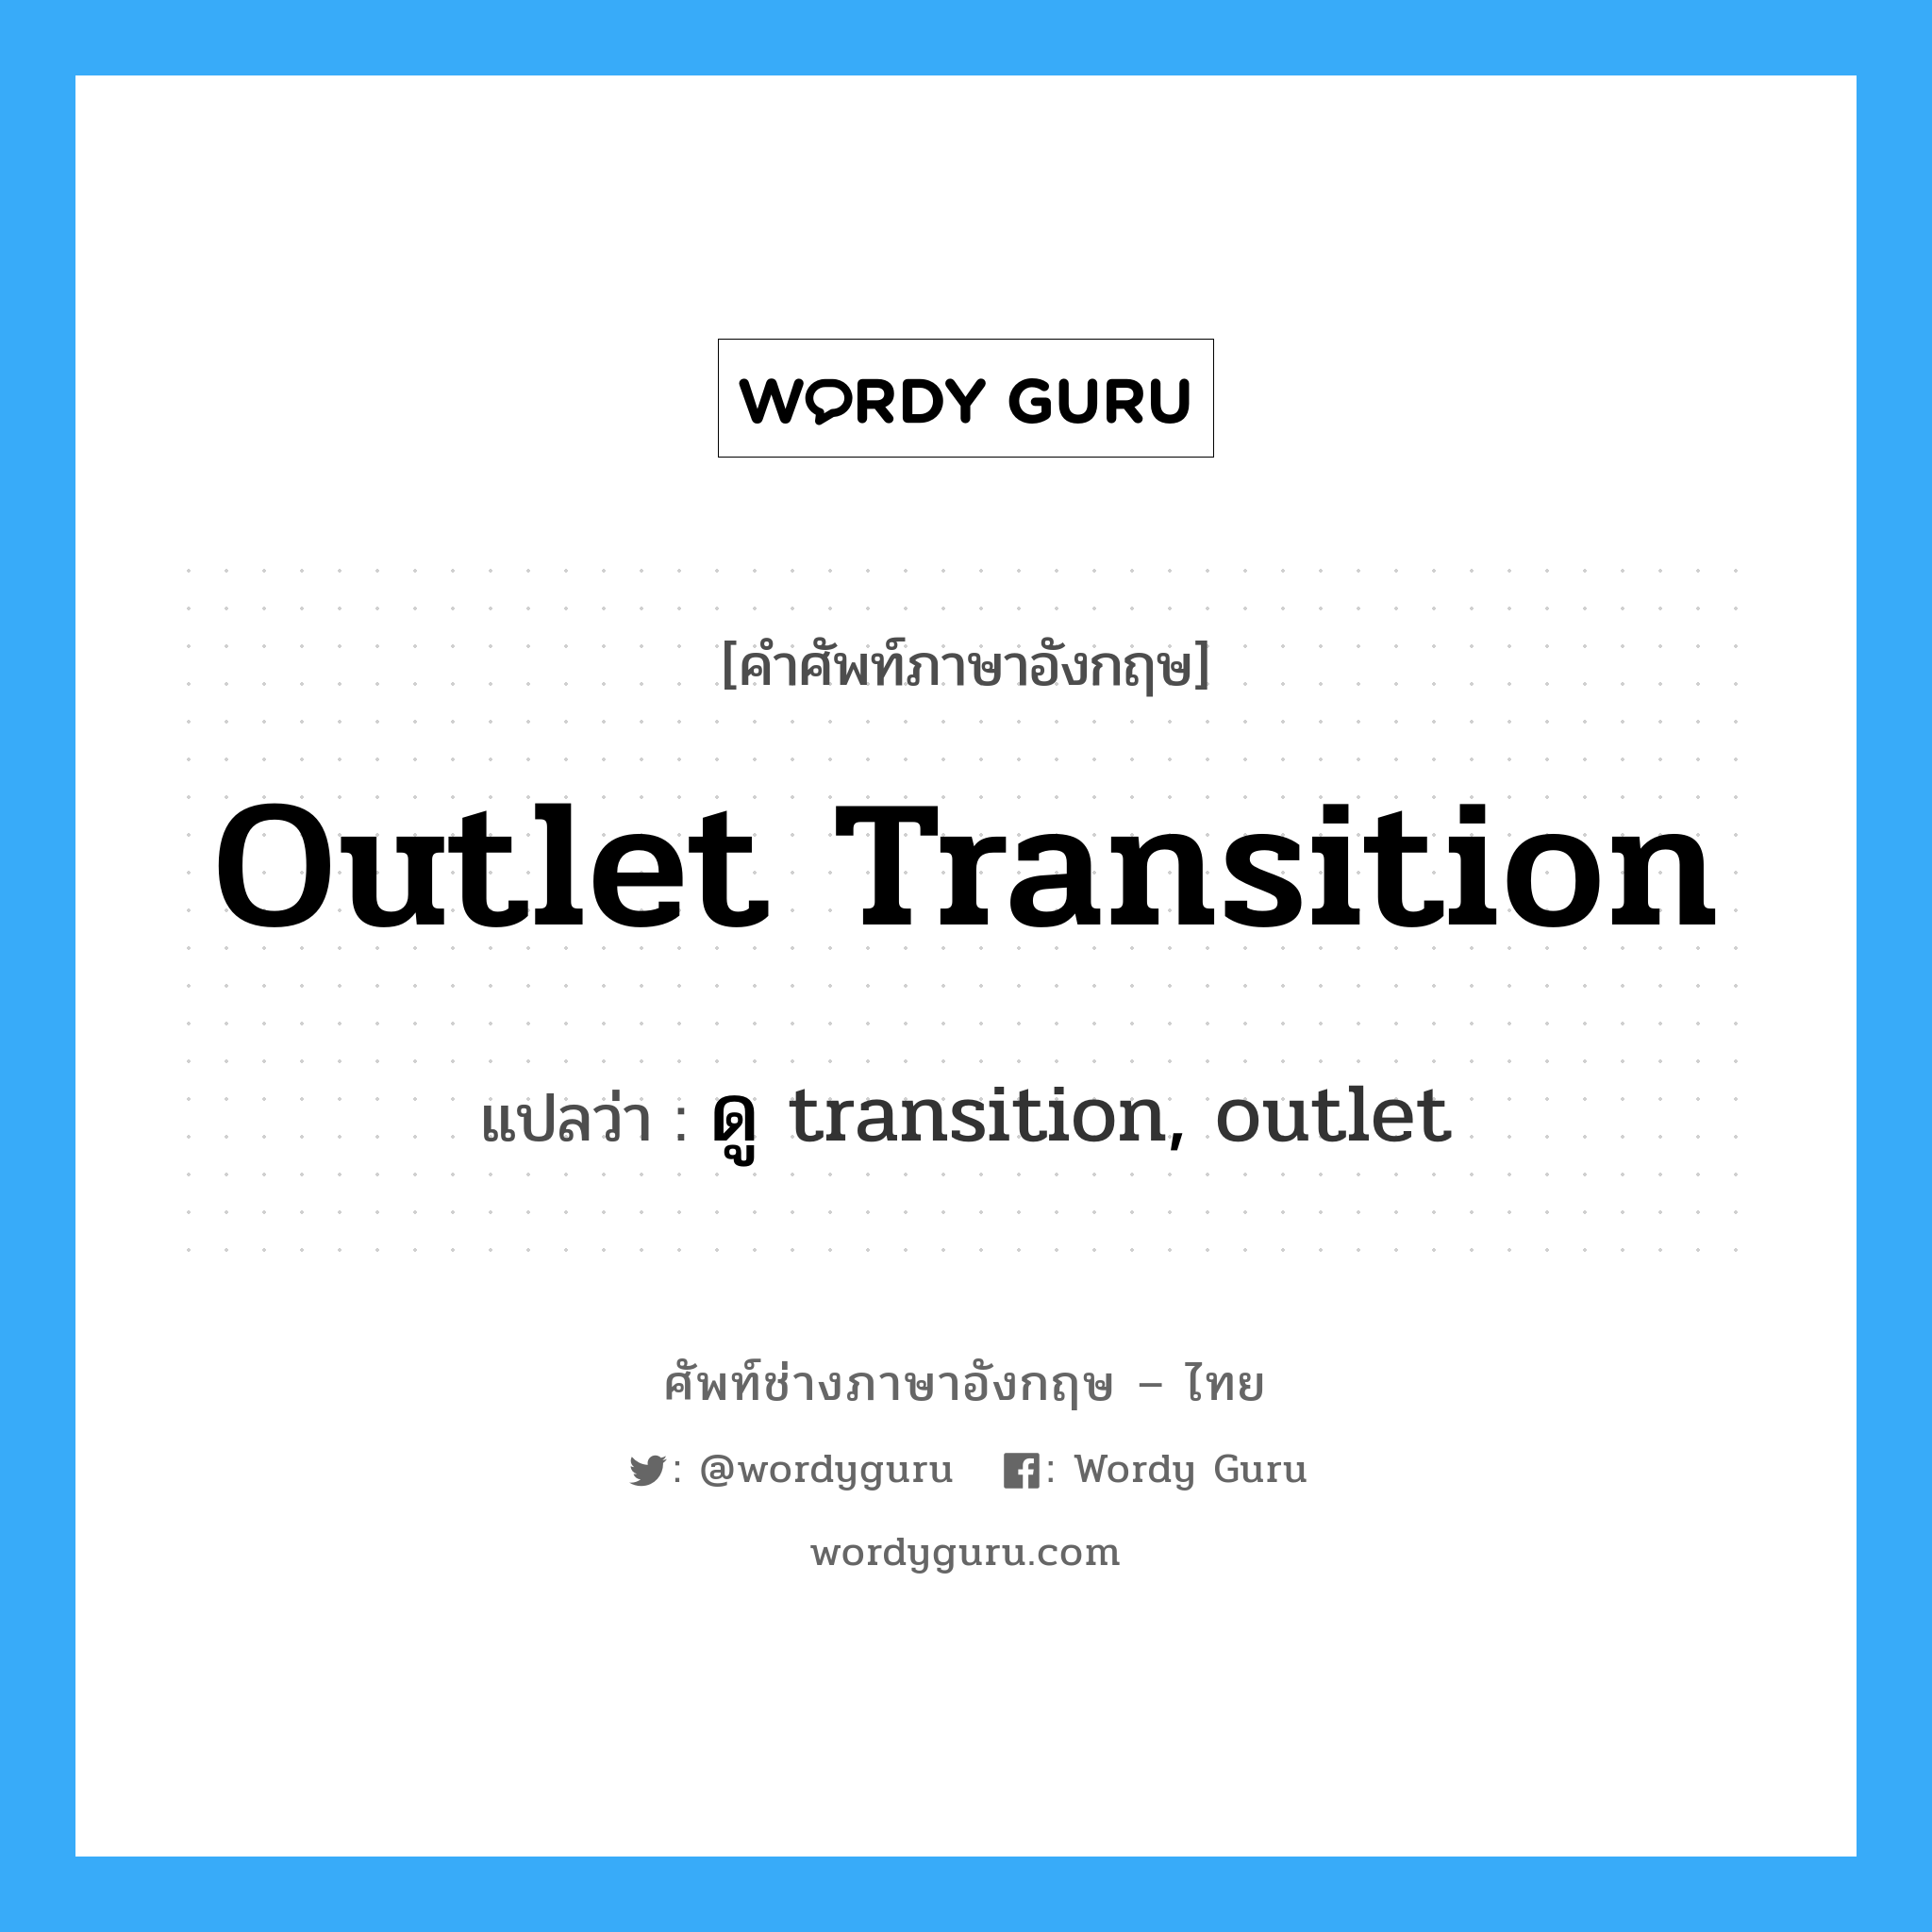 ดู transition, outlet ภาษาอังกฤษ?, คำศัพท์ช่างภาษาอังกฤษ - ไทย ดู transition, outlet คำศัพท์ภาษาอังกฤษ ดู transition, outlet แปลว่า outlet transition